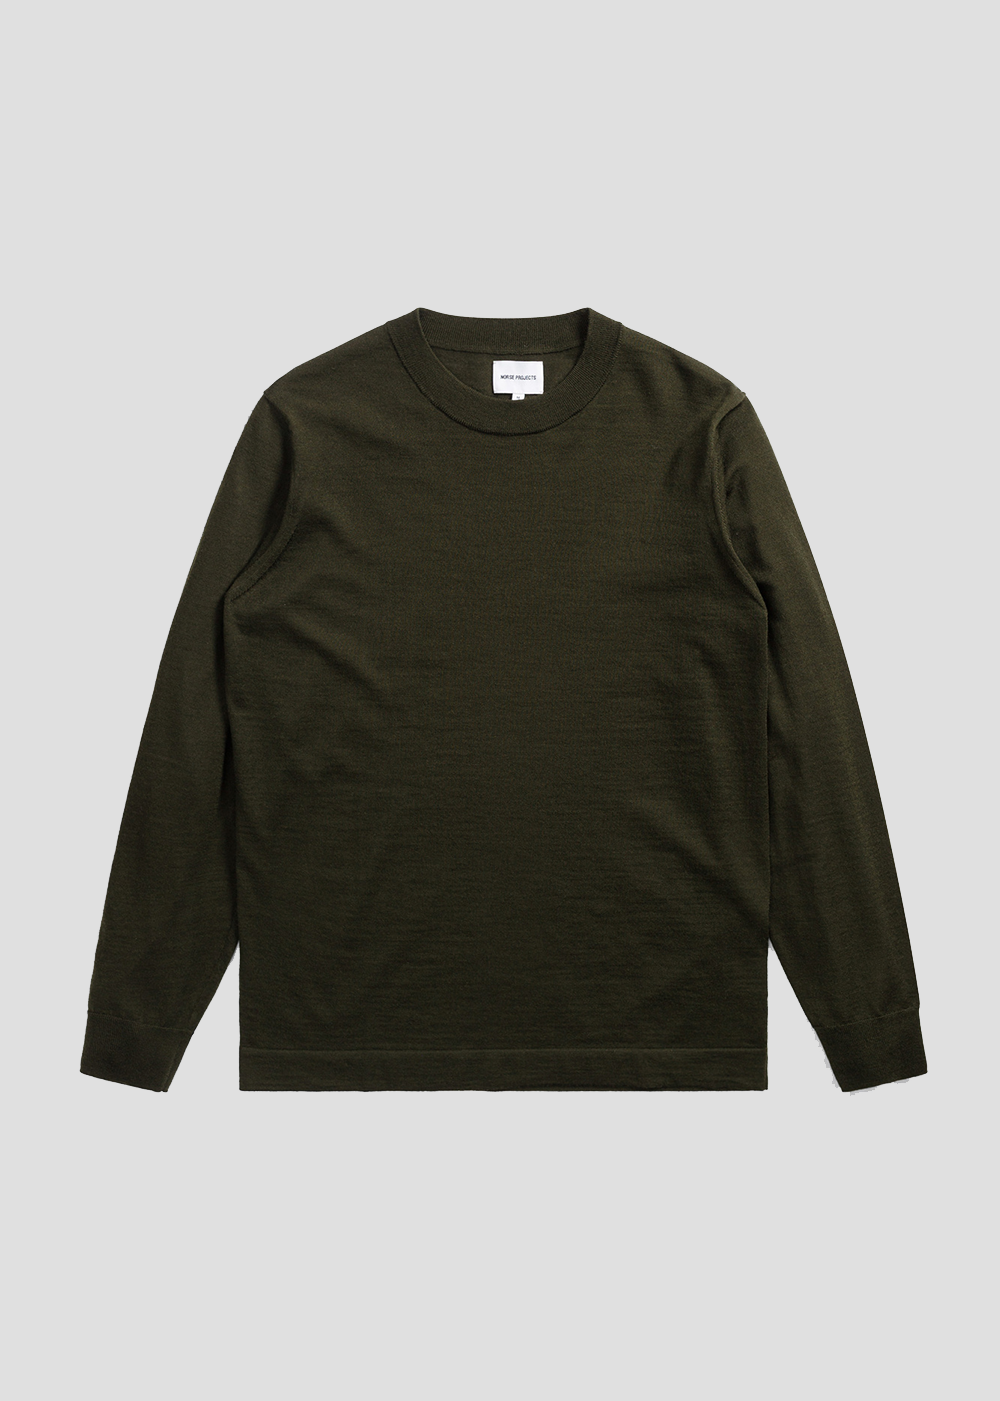 Teis Tech Merino Sweater